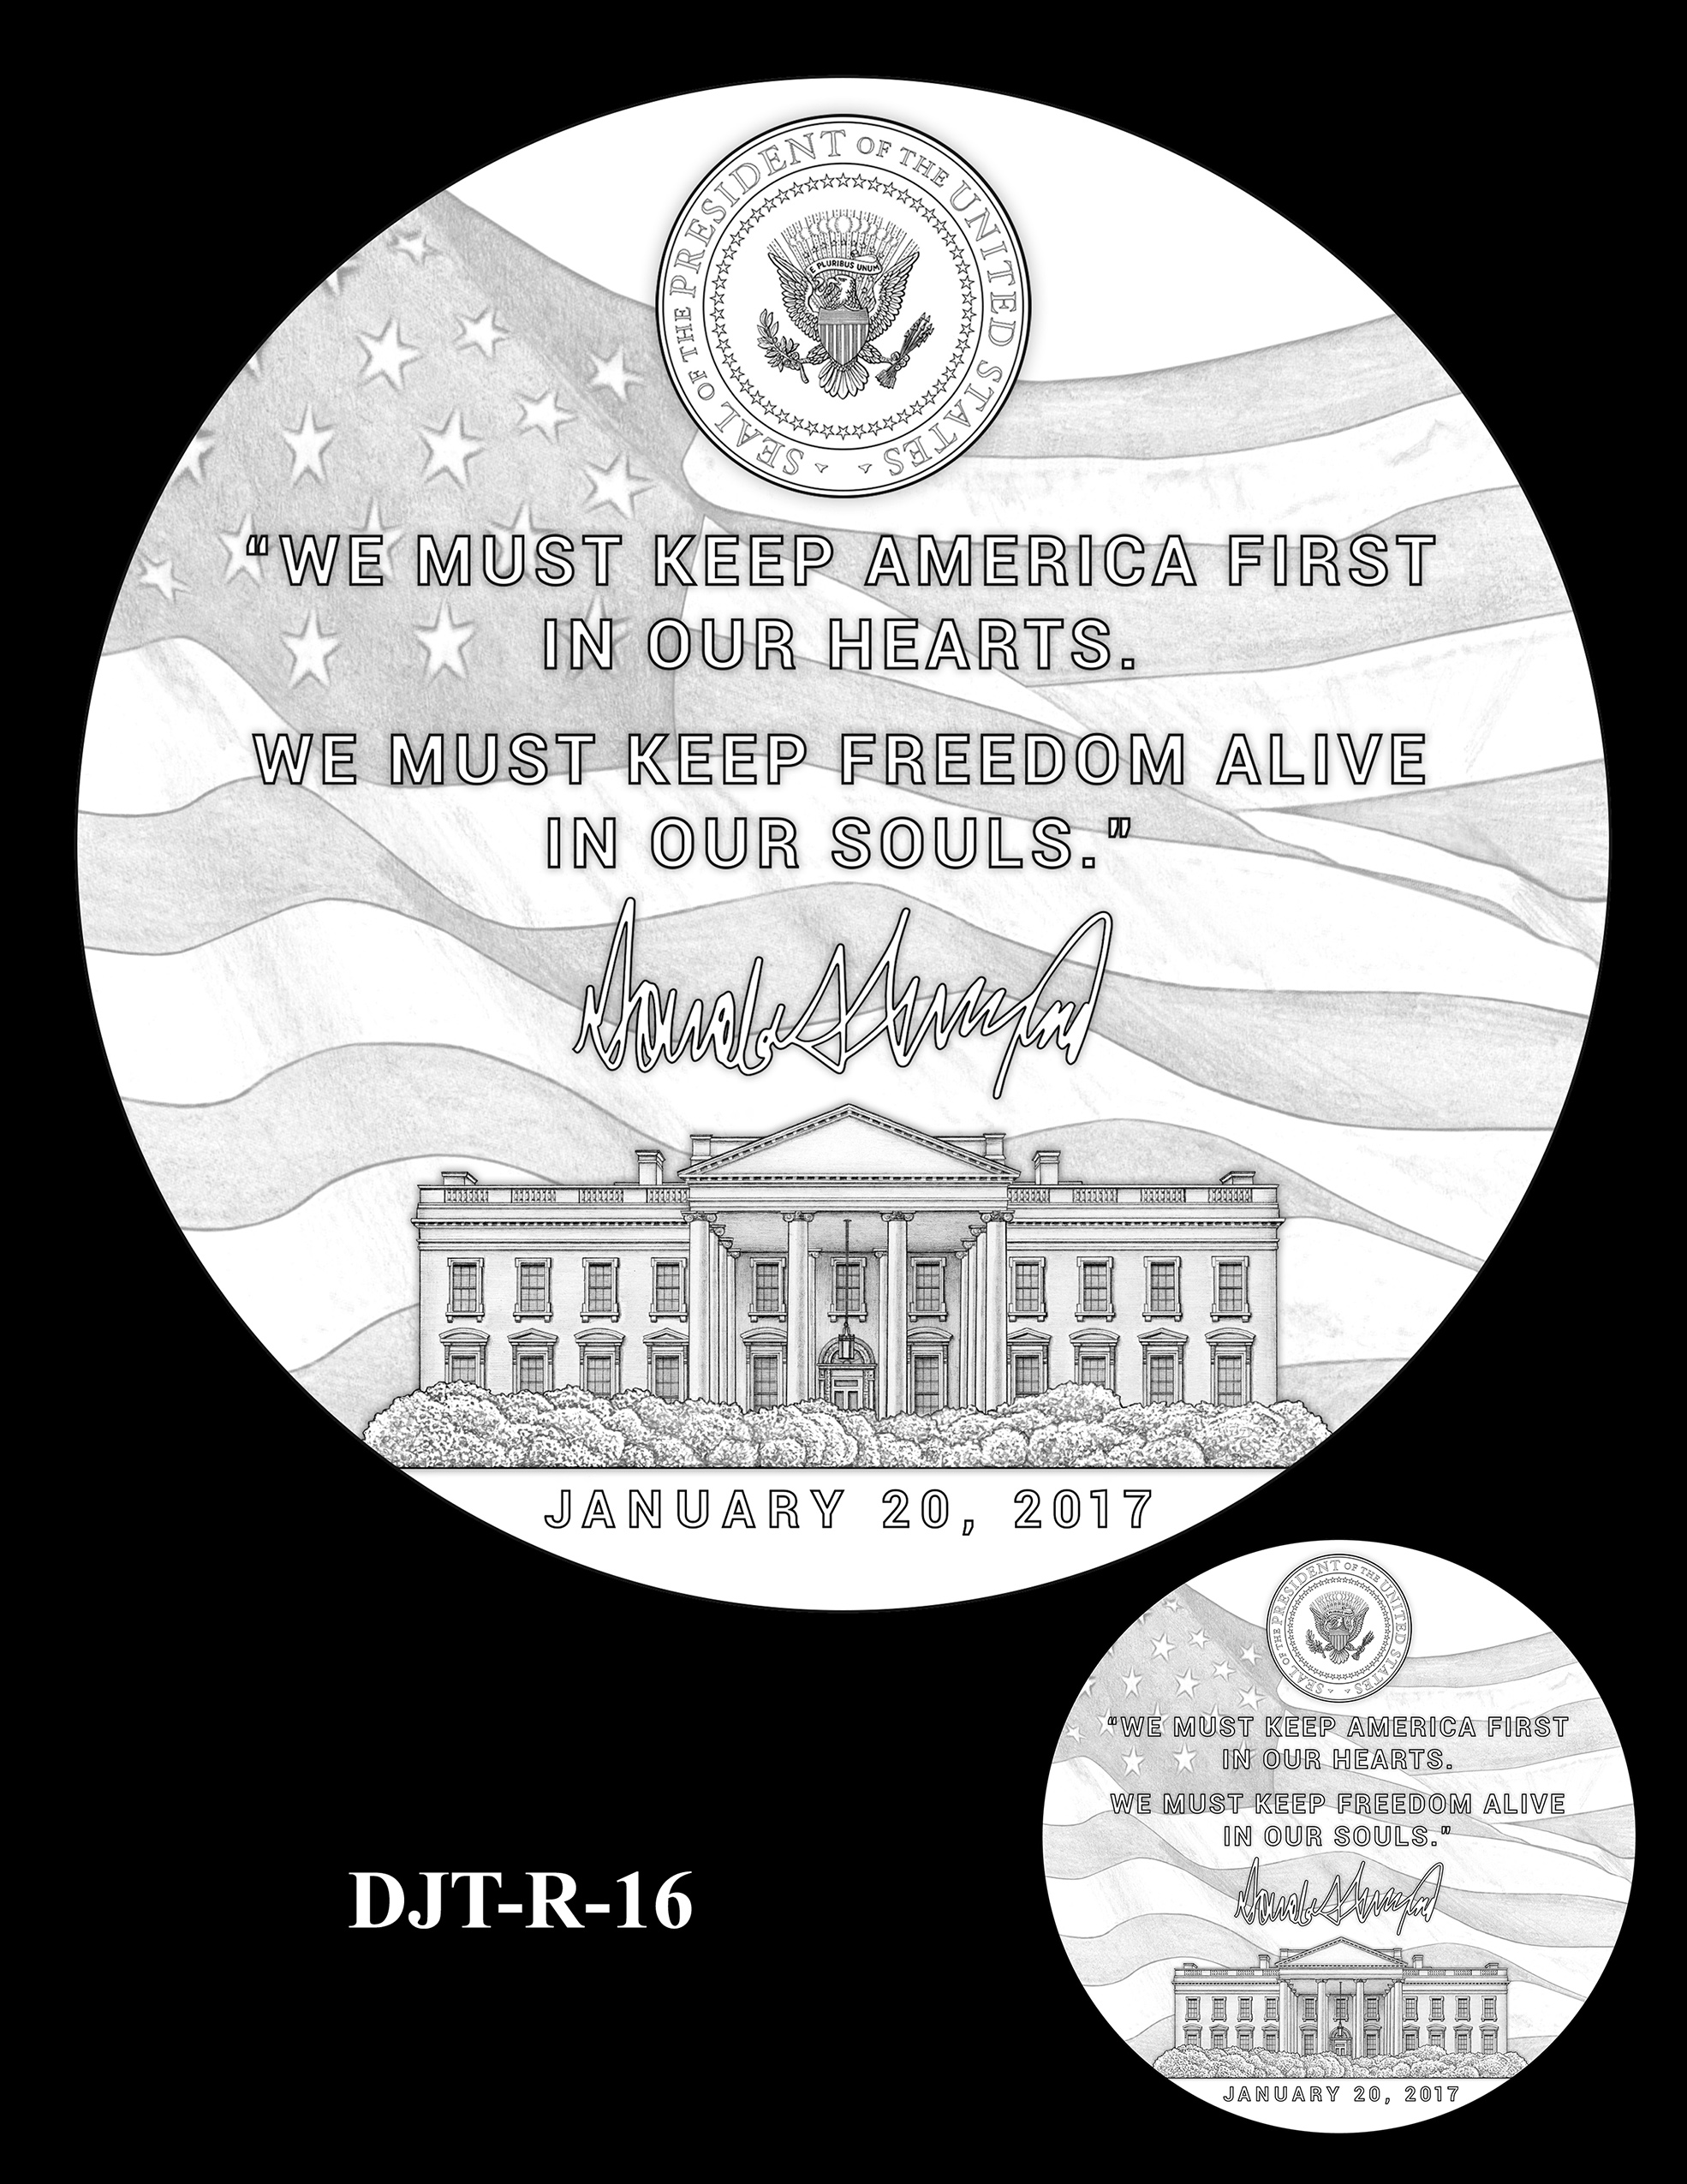 DJT-R-16 -- Donald J. Trump Presidential Medal